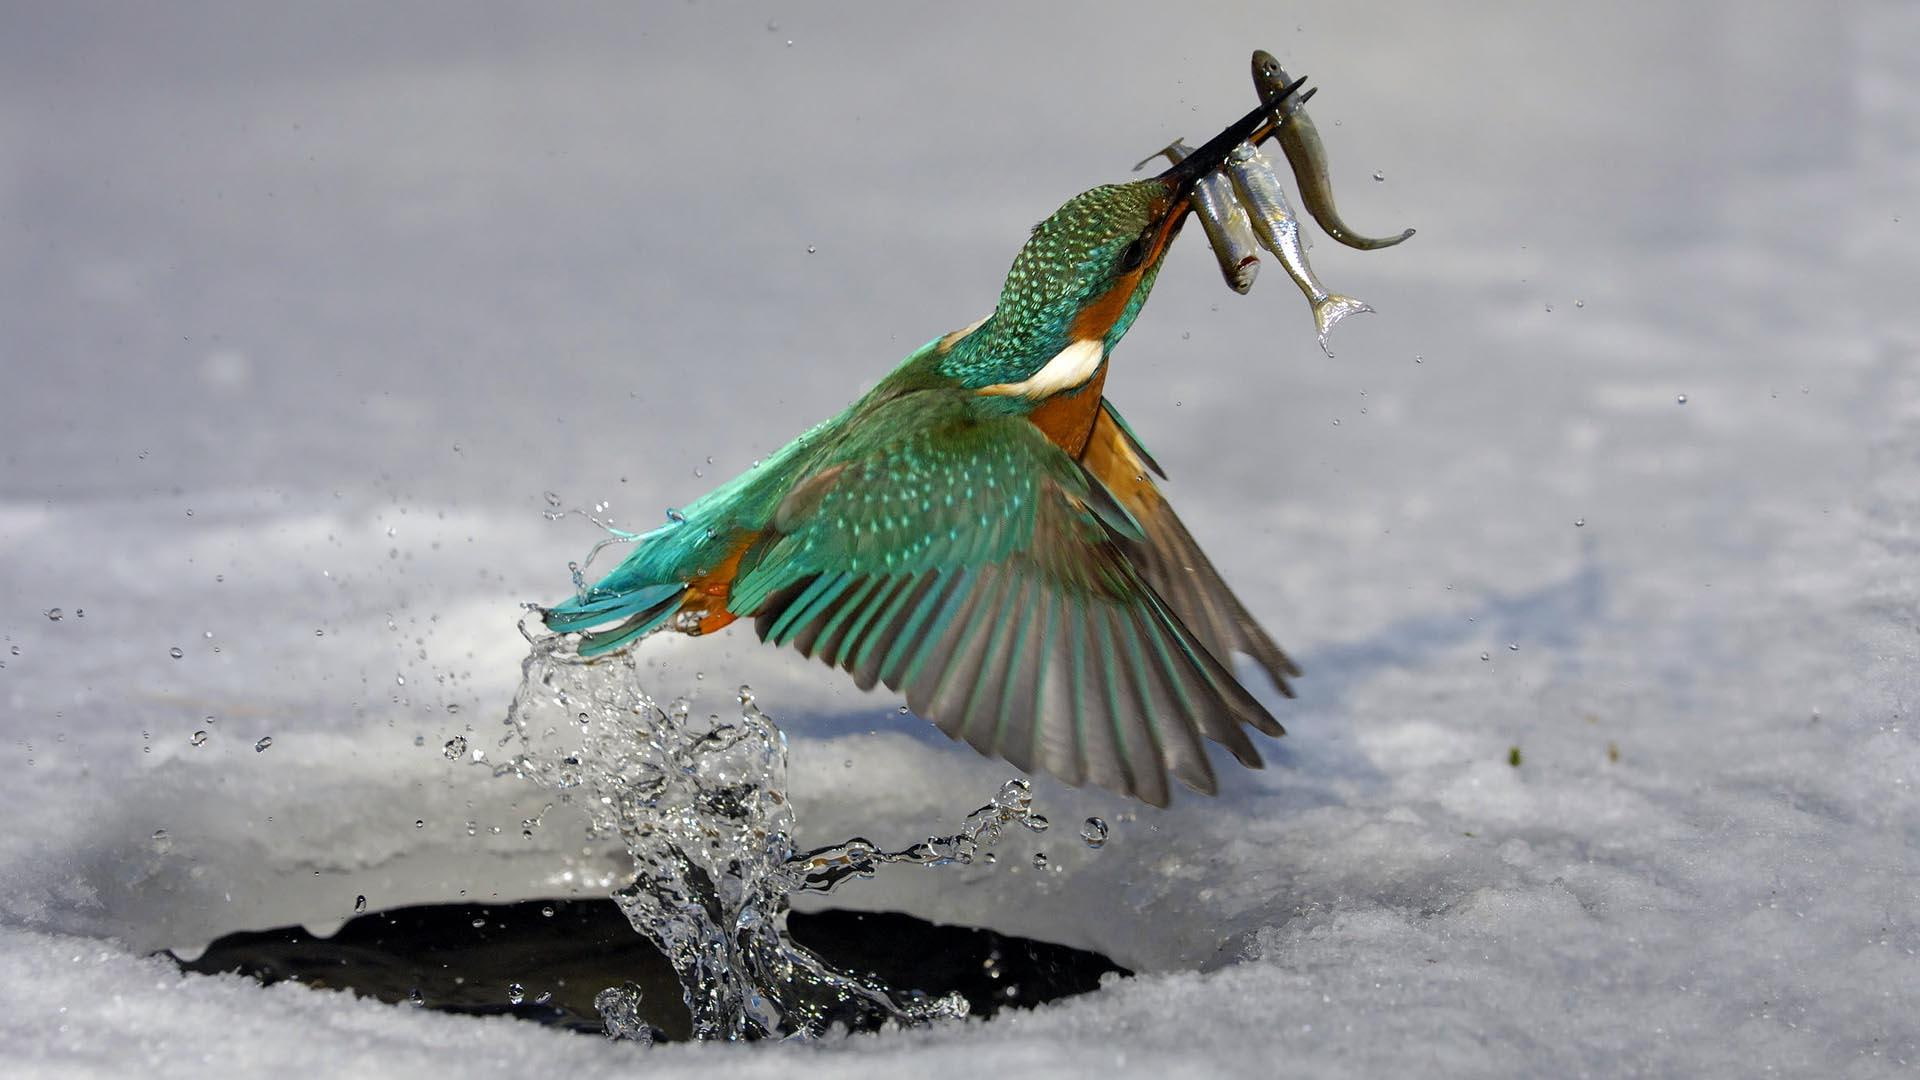 Kingfisher At Work, splash, ice hole, animals